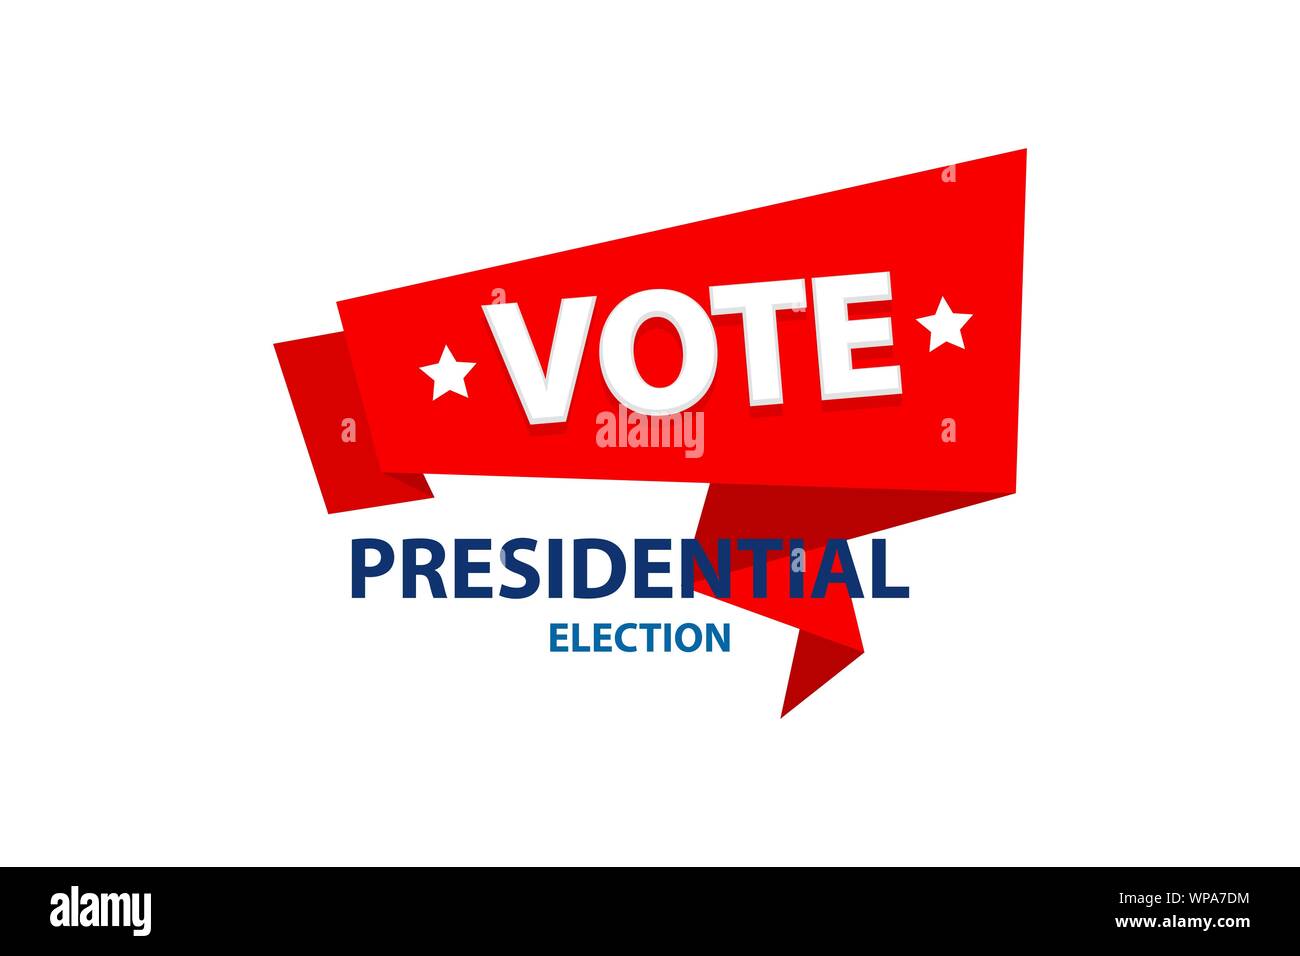 2020 Voto negli Stati Uniti il presidente americano banner Illustrazione Vettoriale